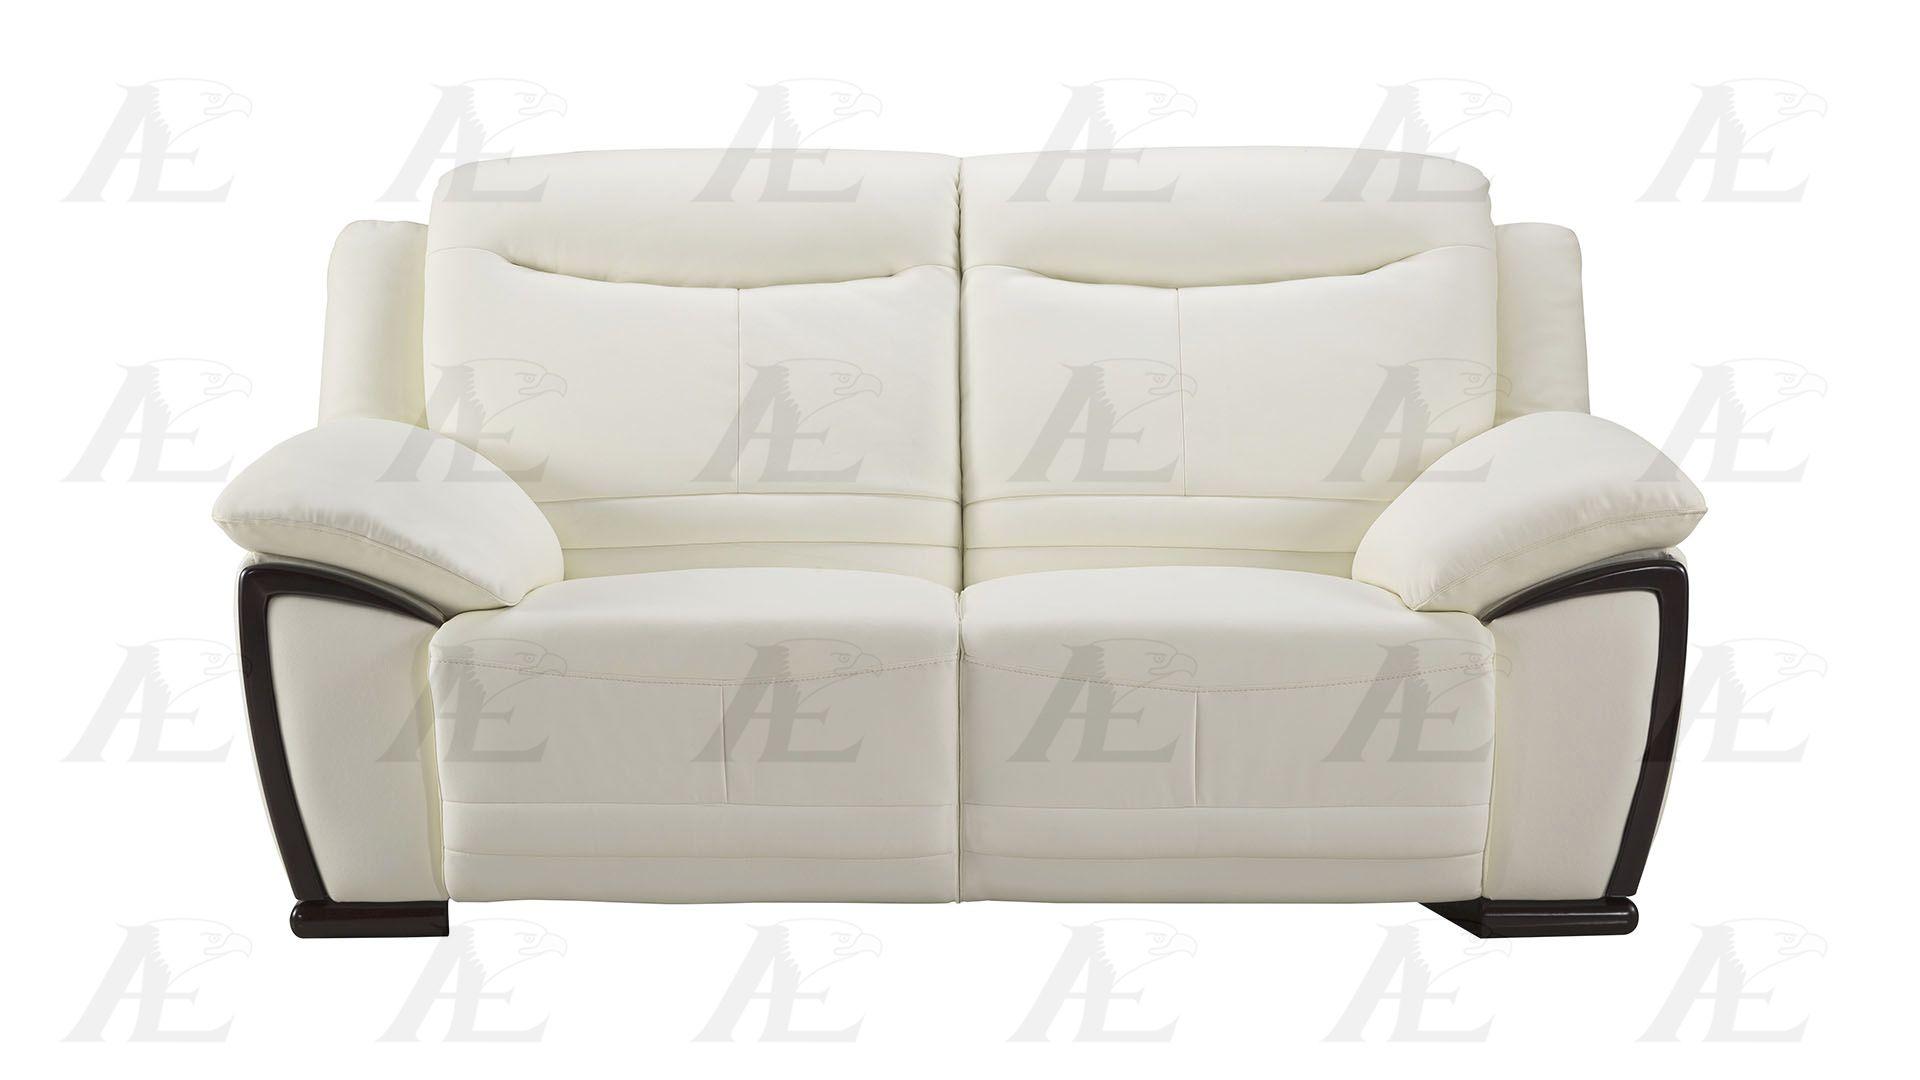 

    
American Eagle Furniture EK-B308-W Sofa White EK-B308-W
